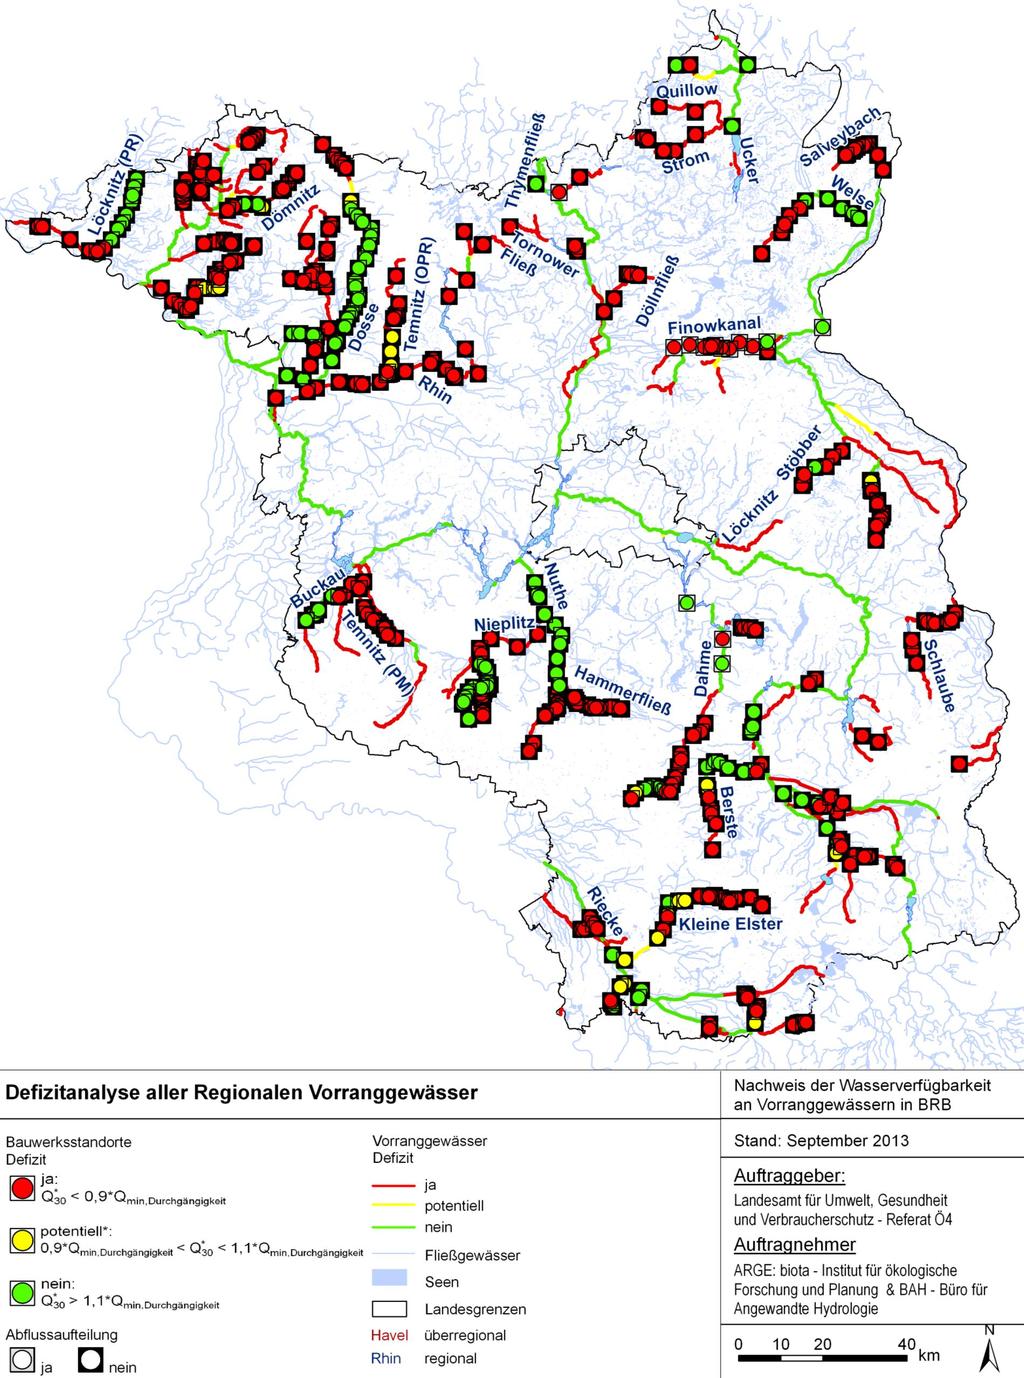 5.2 Regionale Vorranggewässer Abbildung 5-8 zeigt eine Übersicht über die Defizitanalyse der Querbauwerksstandorte der regionalen Vorranggewässer.